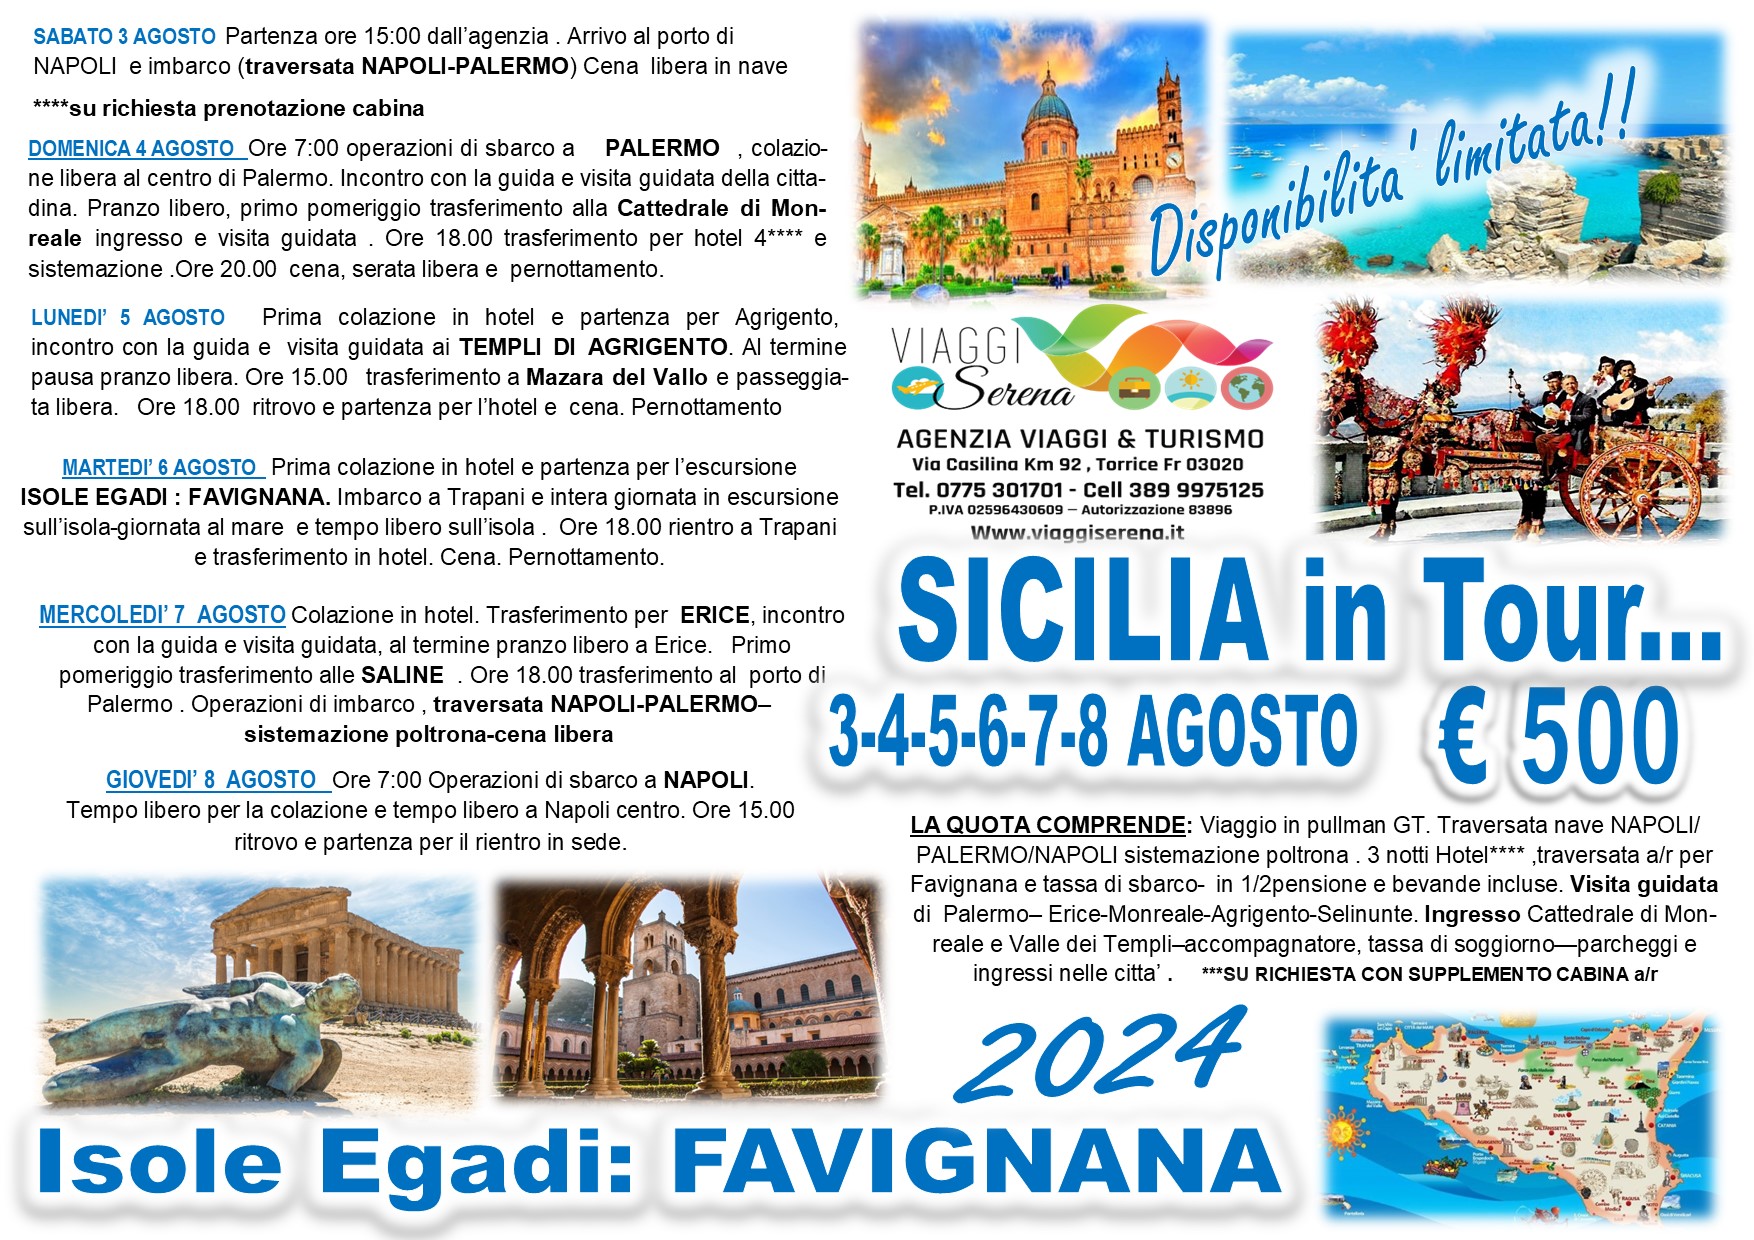 Viaggi di gruppo: Straordinaria Tour Sicilia e Isole Egadi “Favignana” 3-8 Agosto € 500,00